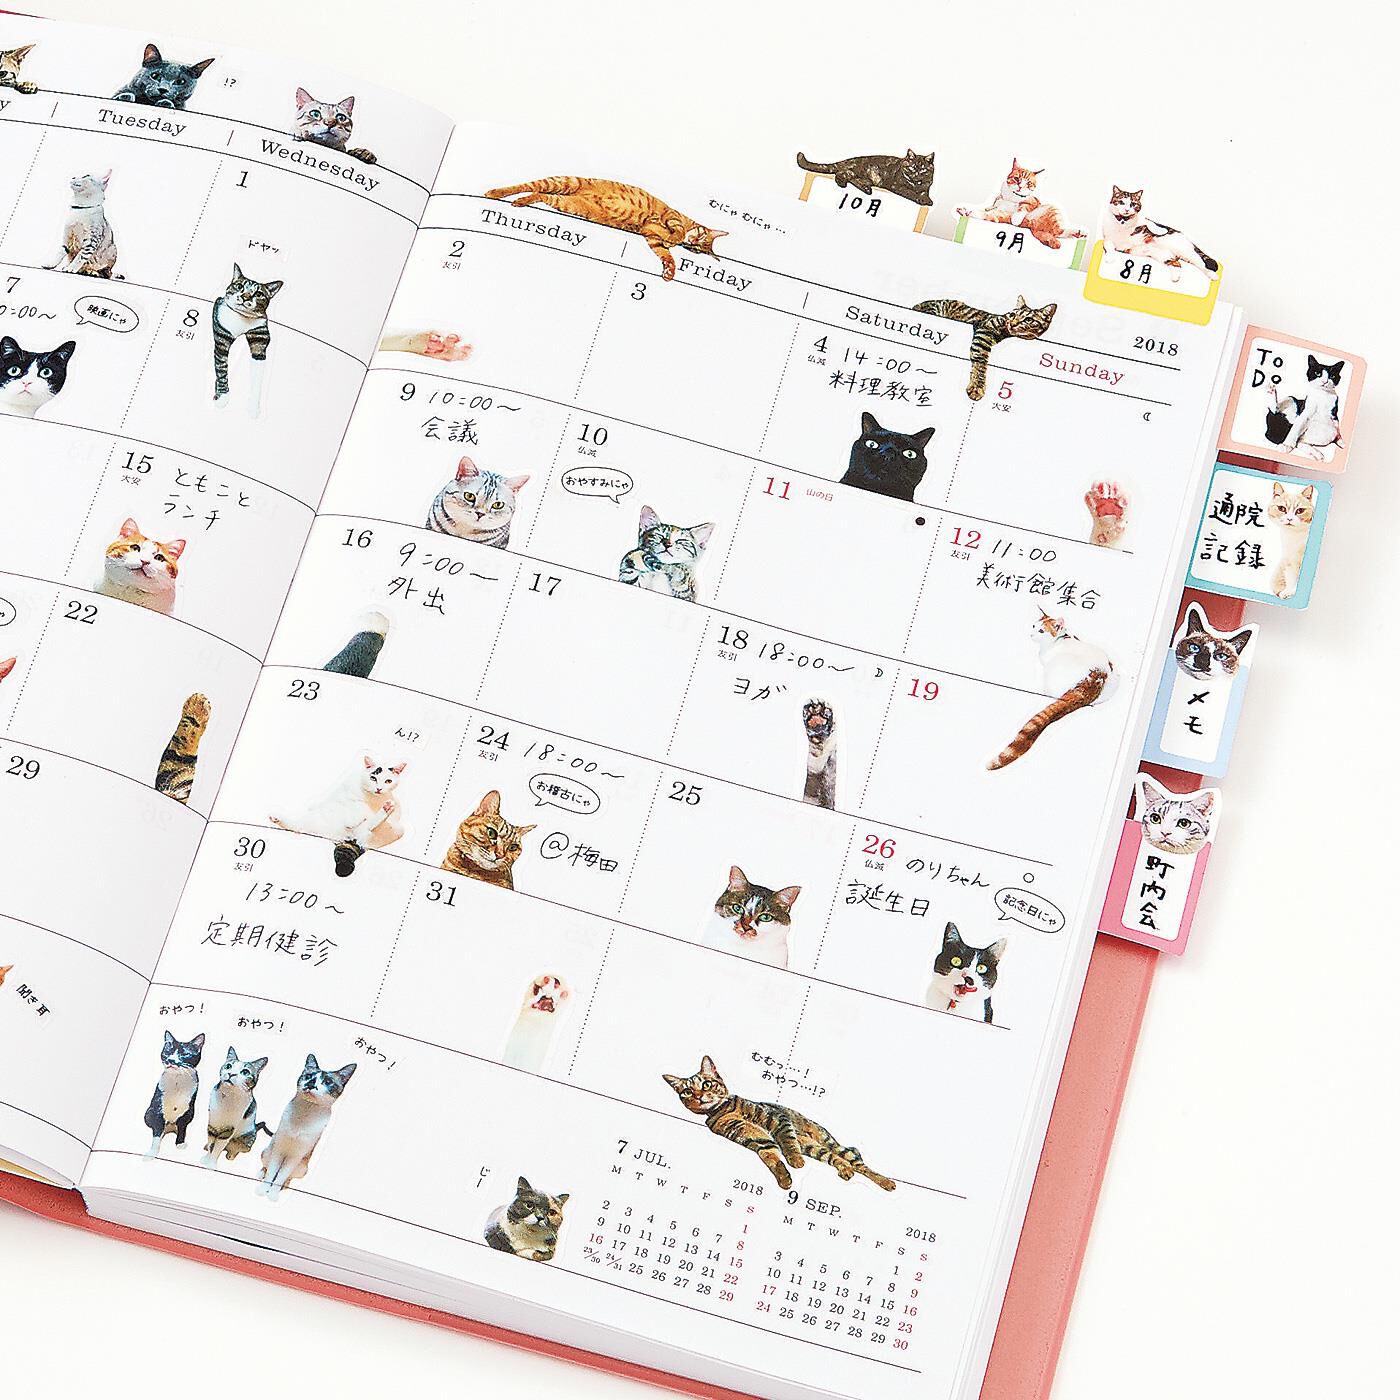 Real Stock|「猫部トーク」の猫さんたちとつくった手帳であそぶ猫シール|手帳に猫さん大集合！！いろんなしぐさにキュン♪